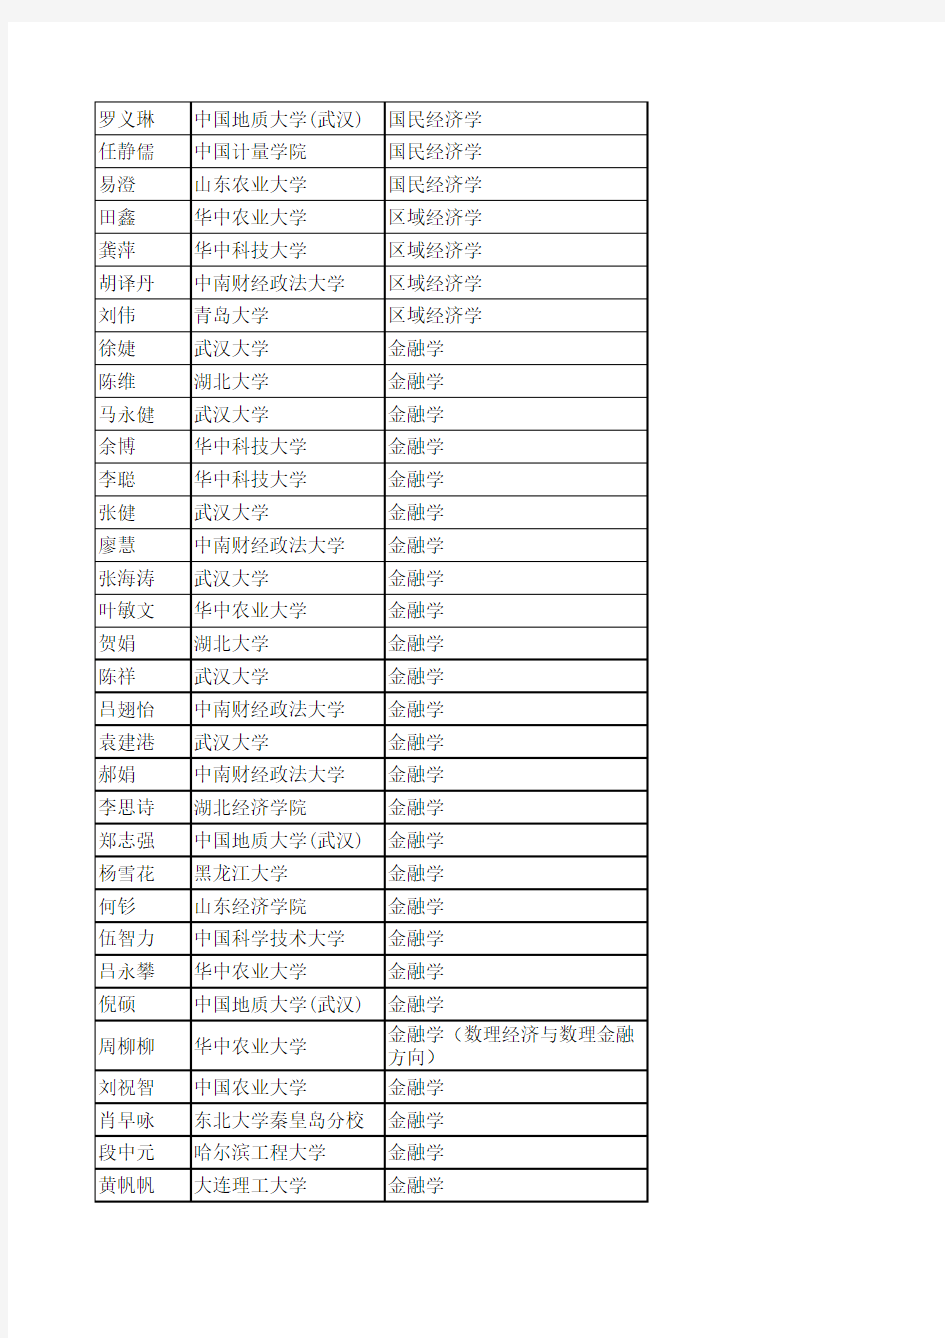 武汉大学经济与管理学院2012复试名单